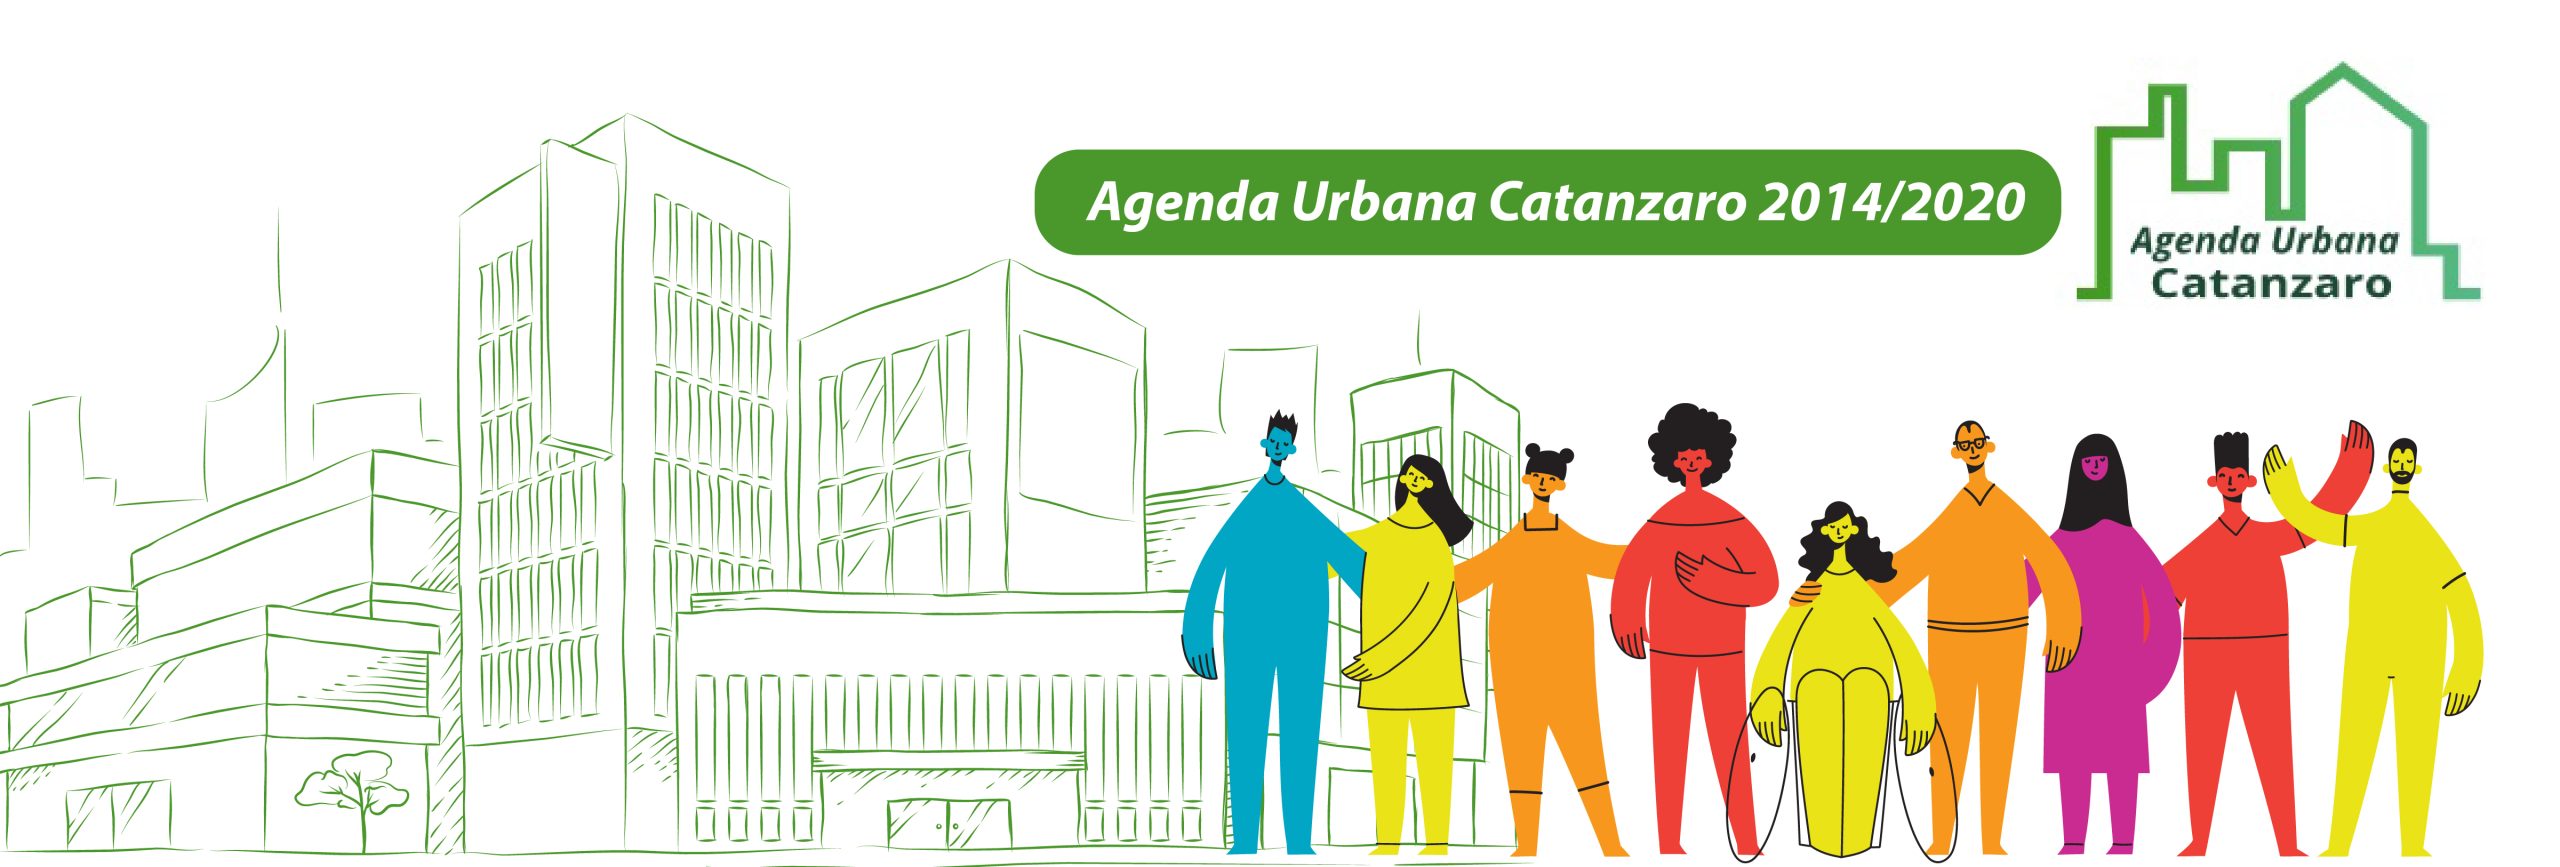 Agenda Urbana Catanzaro 2014/2020: pubblicati tre avvisi per la costituzione di un team a supporto dell’Amministrazione